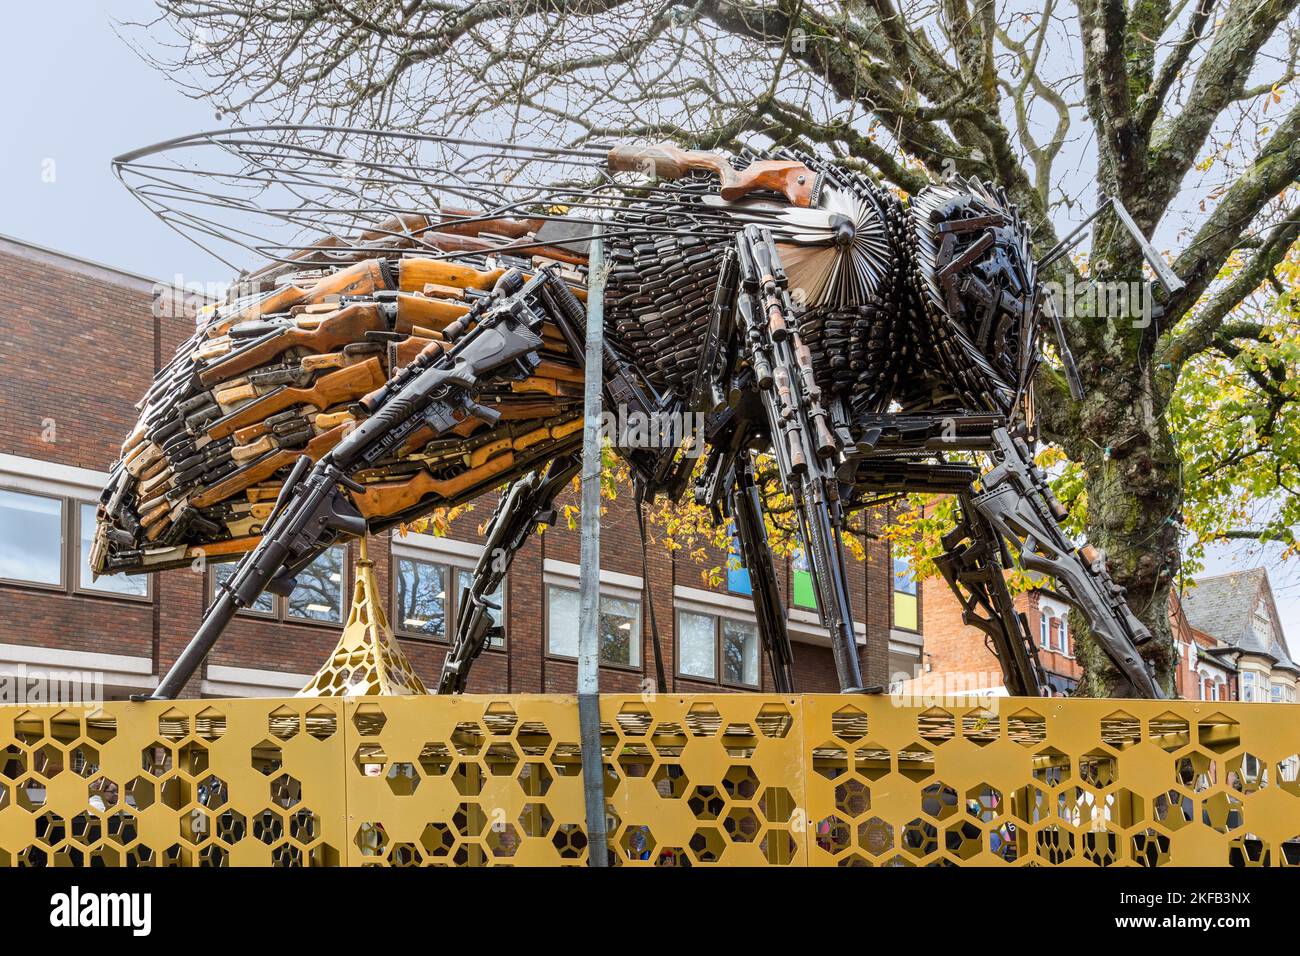 Eine riesige Biene, die aus Messern und Gewehren hergestellt wurde, die beschlagnahmt oder der Polizei im Raum Manchester übergeben wurden. Ausgestellt im Stadtzentrum von Redditch. Stockfoto